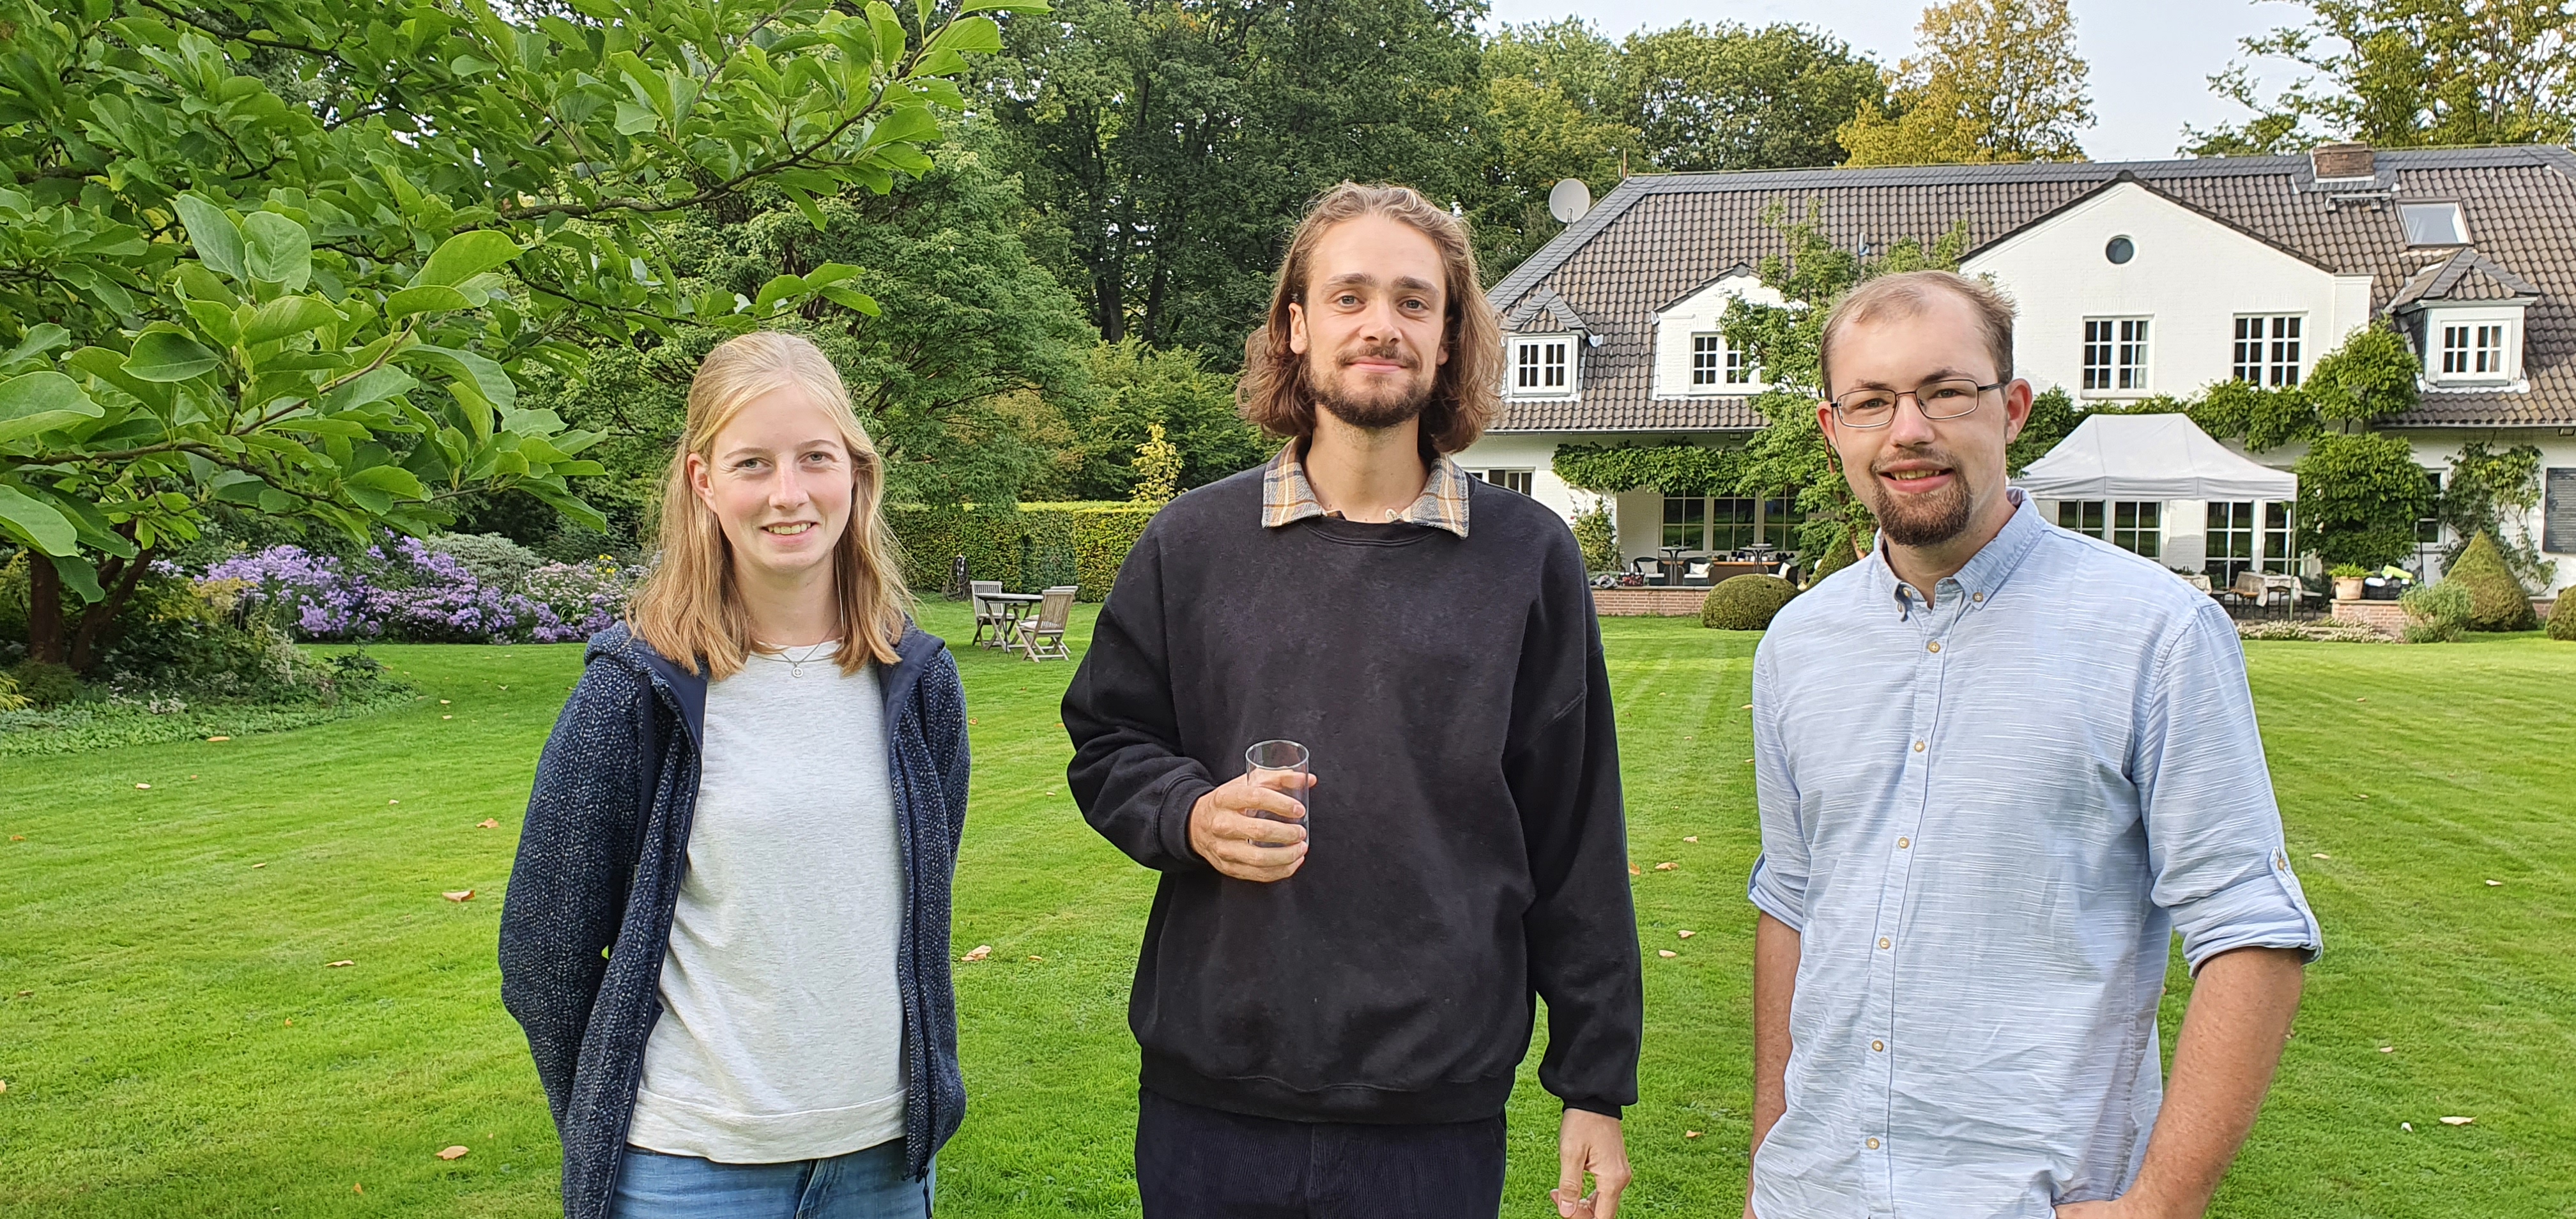 Nadine Wolter, Thilo Schröer und Jan Nienhaus - drei ehemalige Stipendiaten.  © GartenRadio.fm